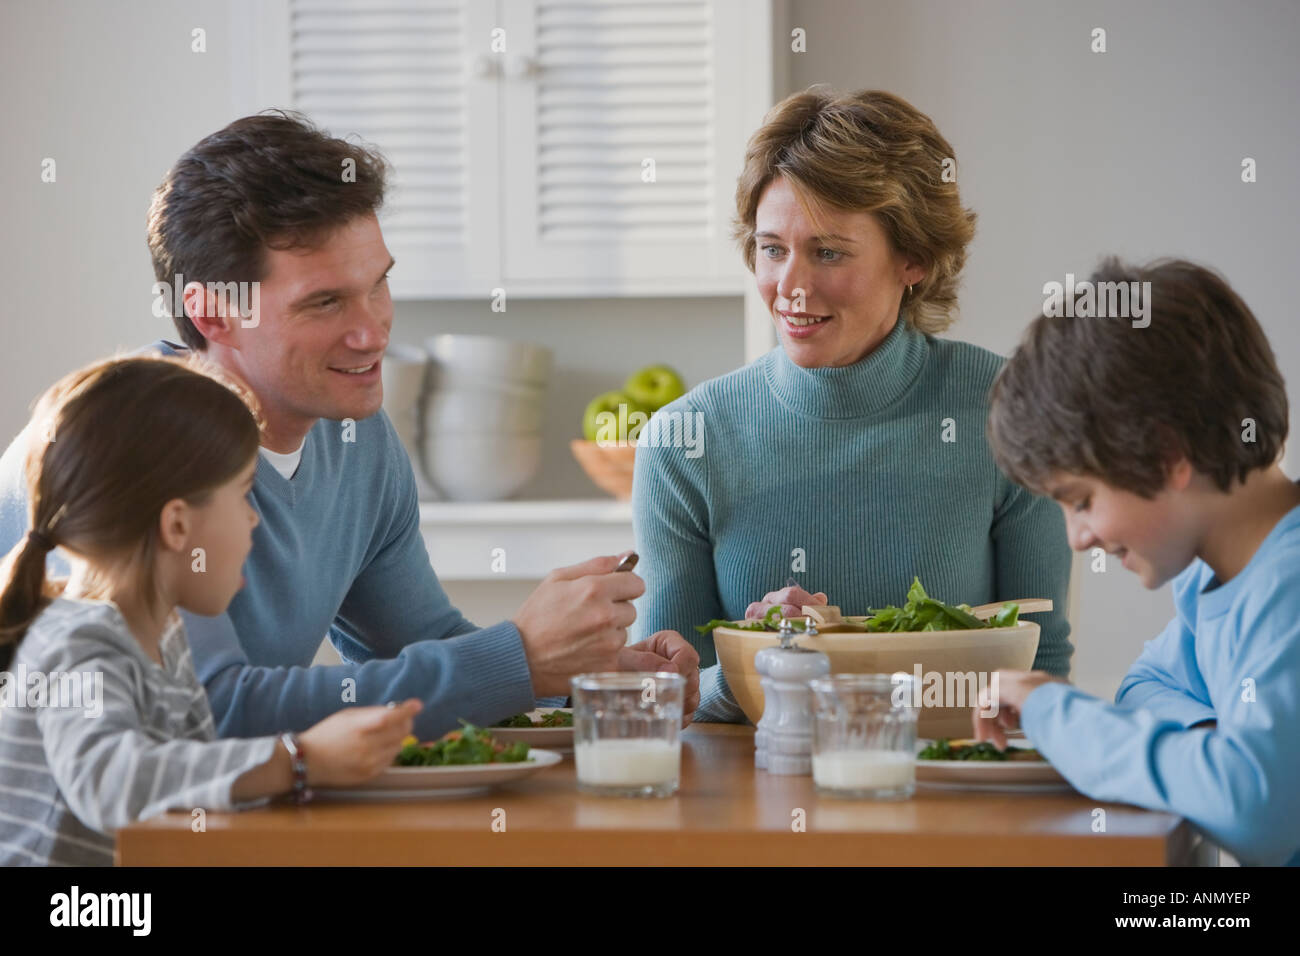 Употребление детьми готовых домашних блюд предоставленных родителями. Два мальчики обедают вместе. Aile. Родители не должны кормить взрослых людей. Под давлением родителей фото.